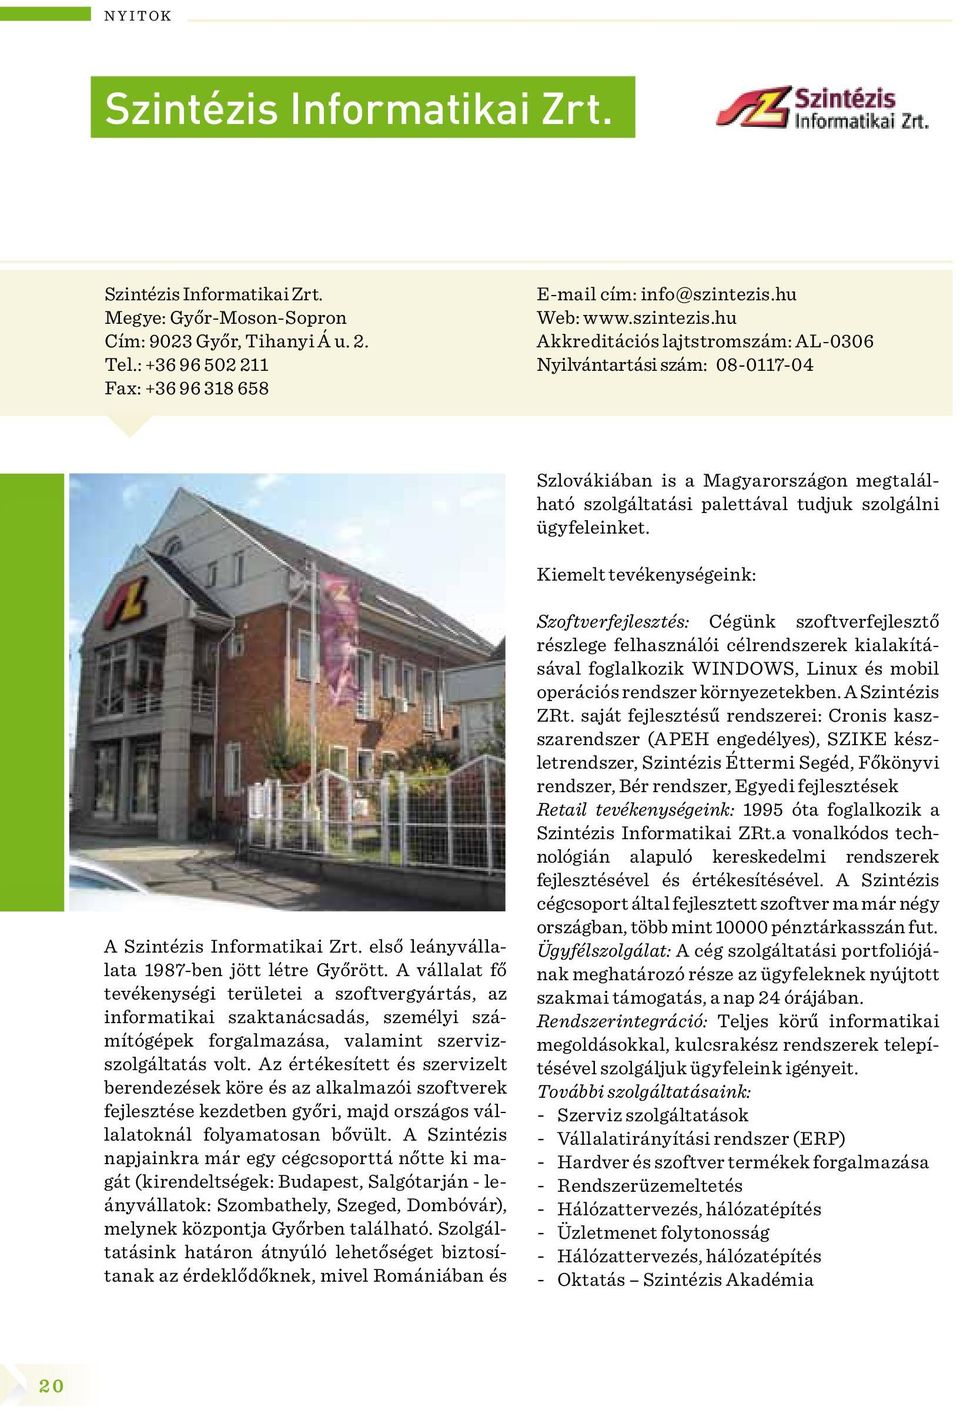 Kiemelt tevékenységeink: A Szintézis Informatikai Zrt. első leányvállalata 1987-ben jött létre Győrött.